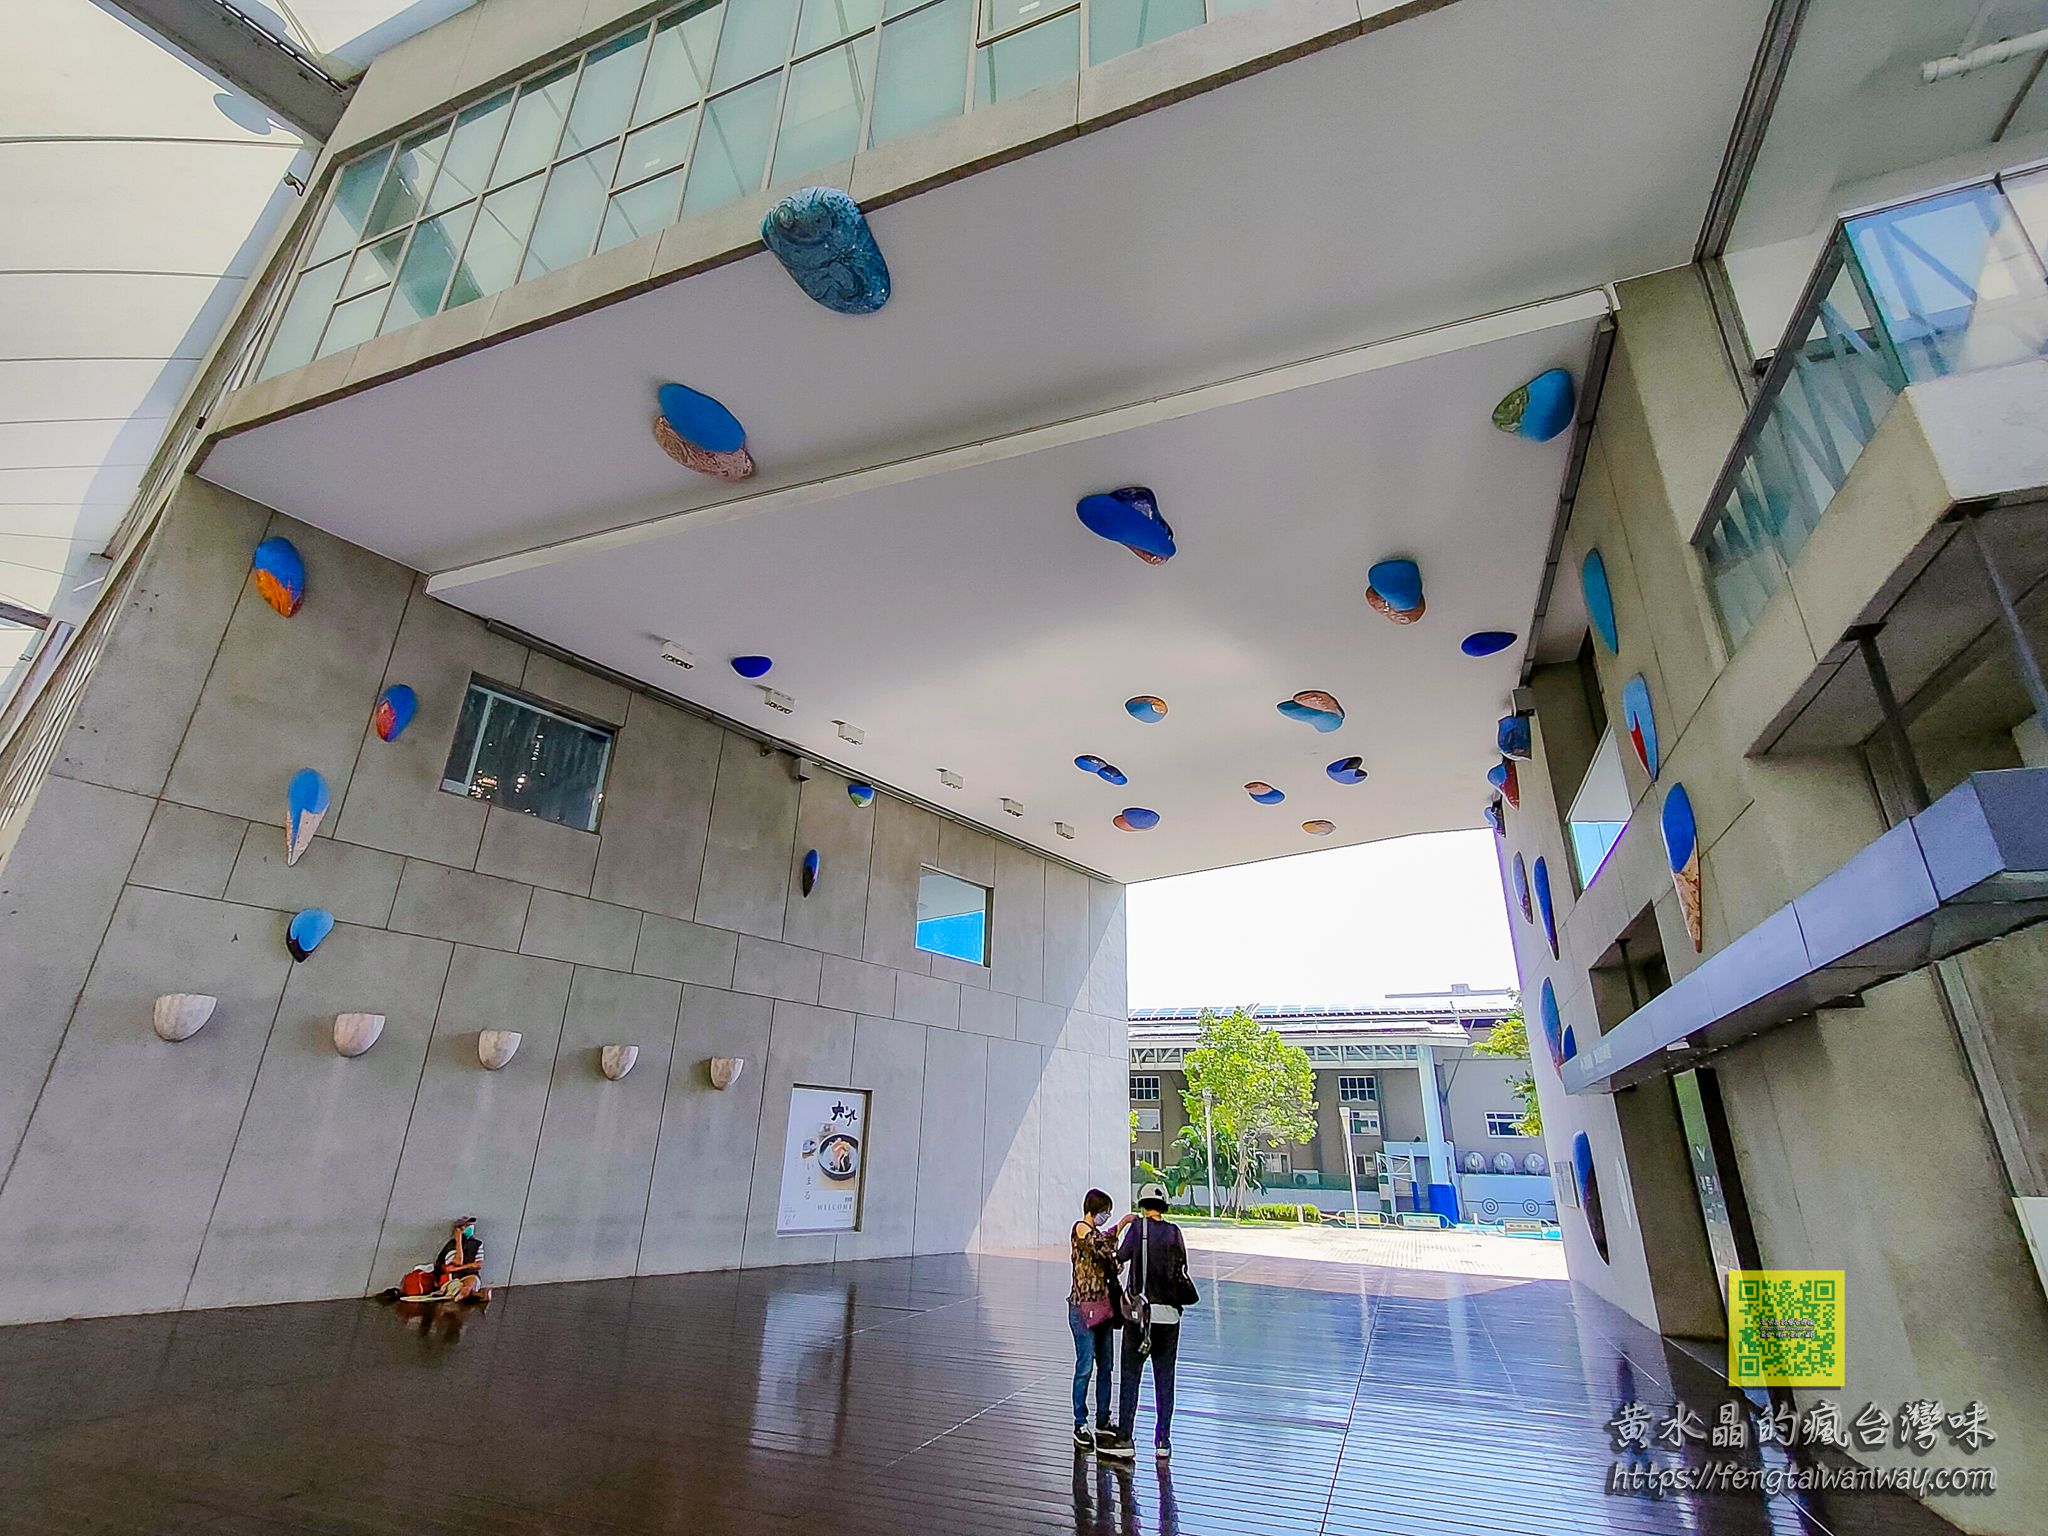 大東文化藝術中心【高雄景點】|蔡依琳MV拍攝場景玻璃帷幕清水模熱氣球造型